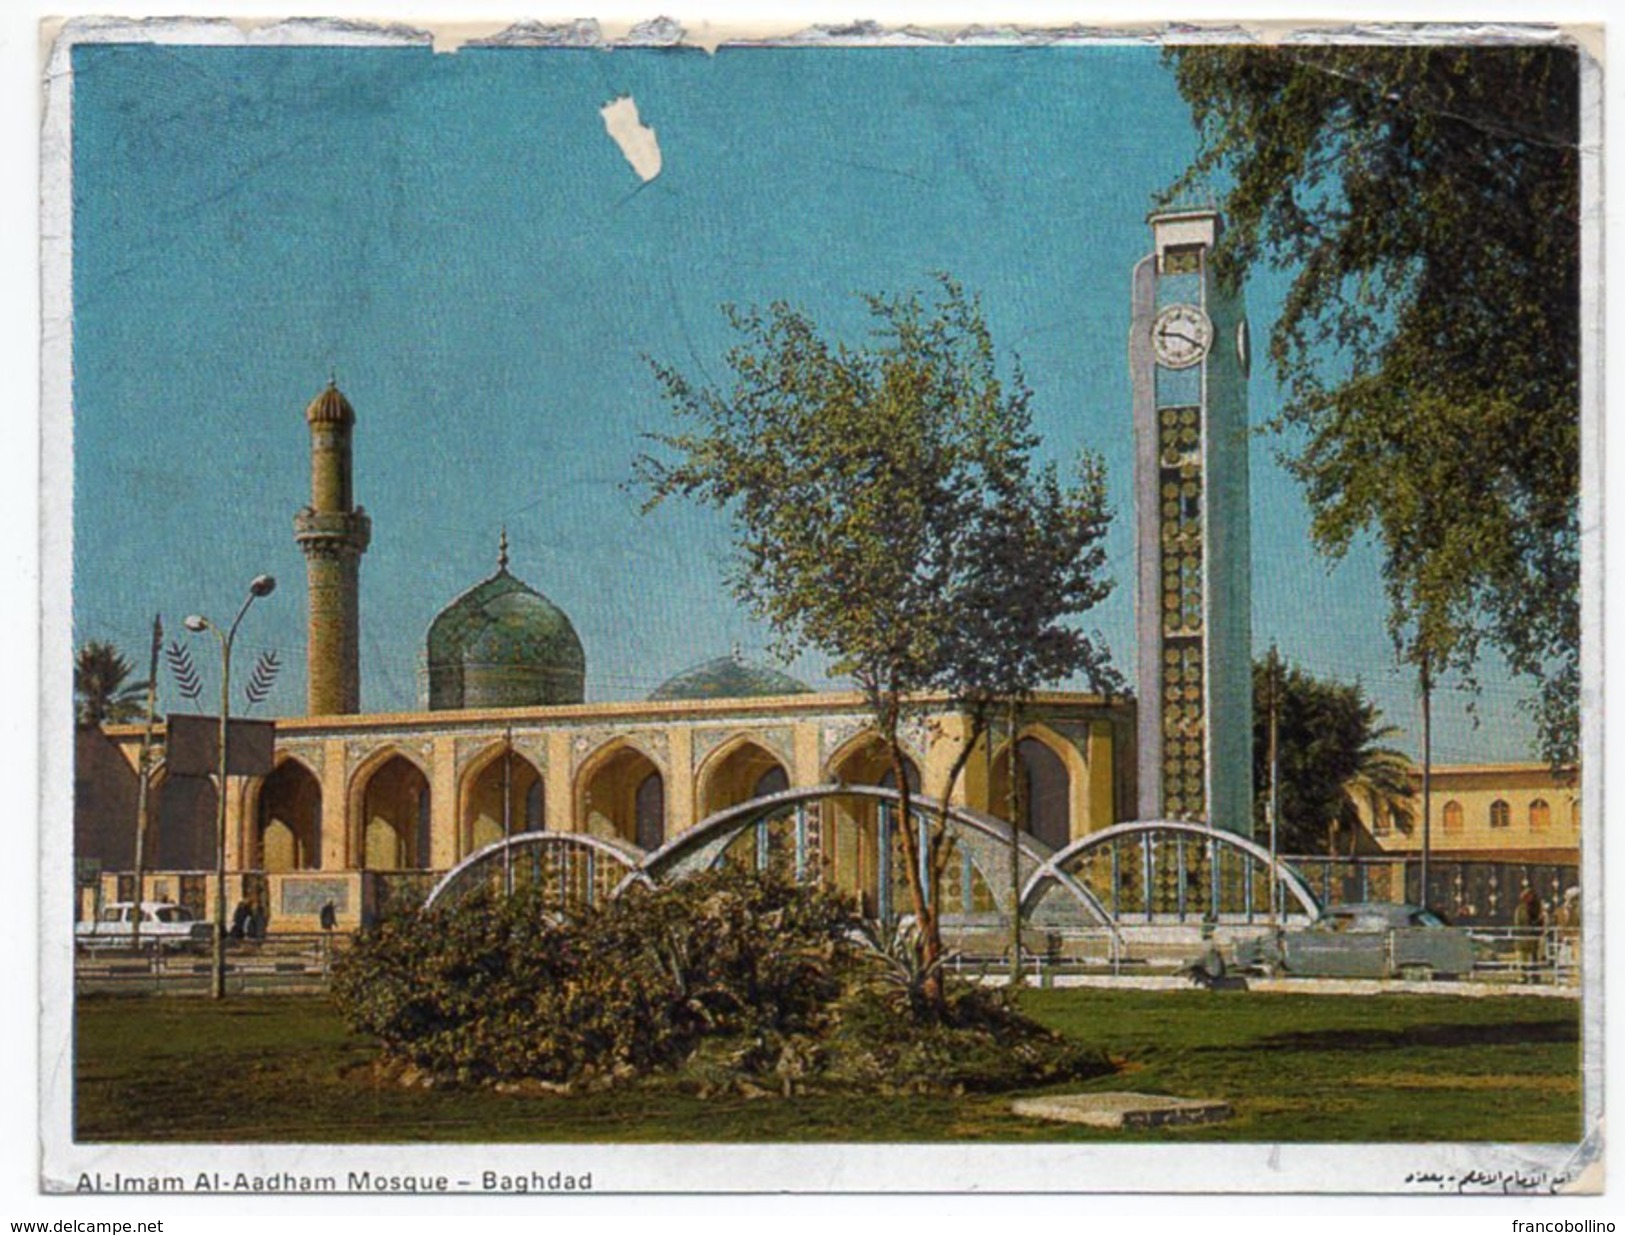 IRAQ/IRAK - AL-IMAM AL-AADHAM MOSQUE - BAGHDAD / CLOCK TOWER / Metallisèe - Iraq